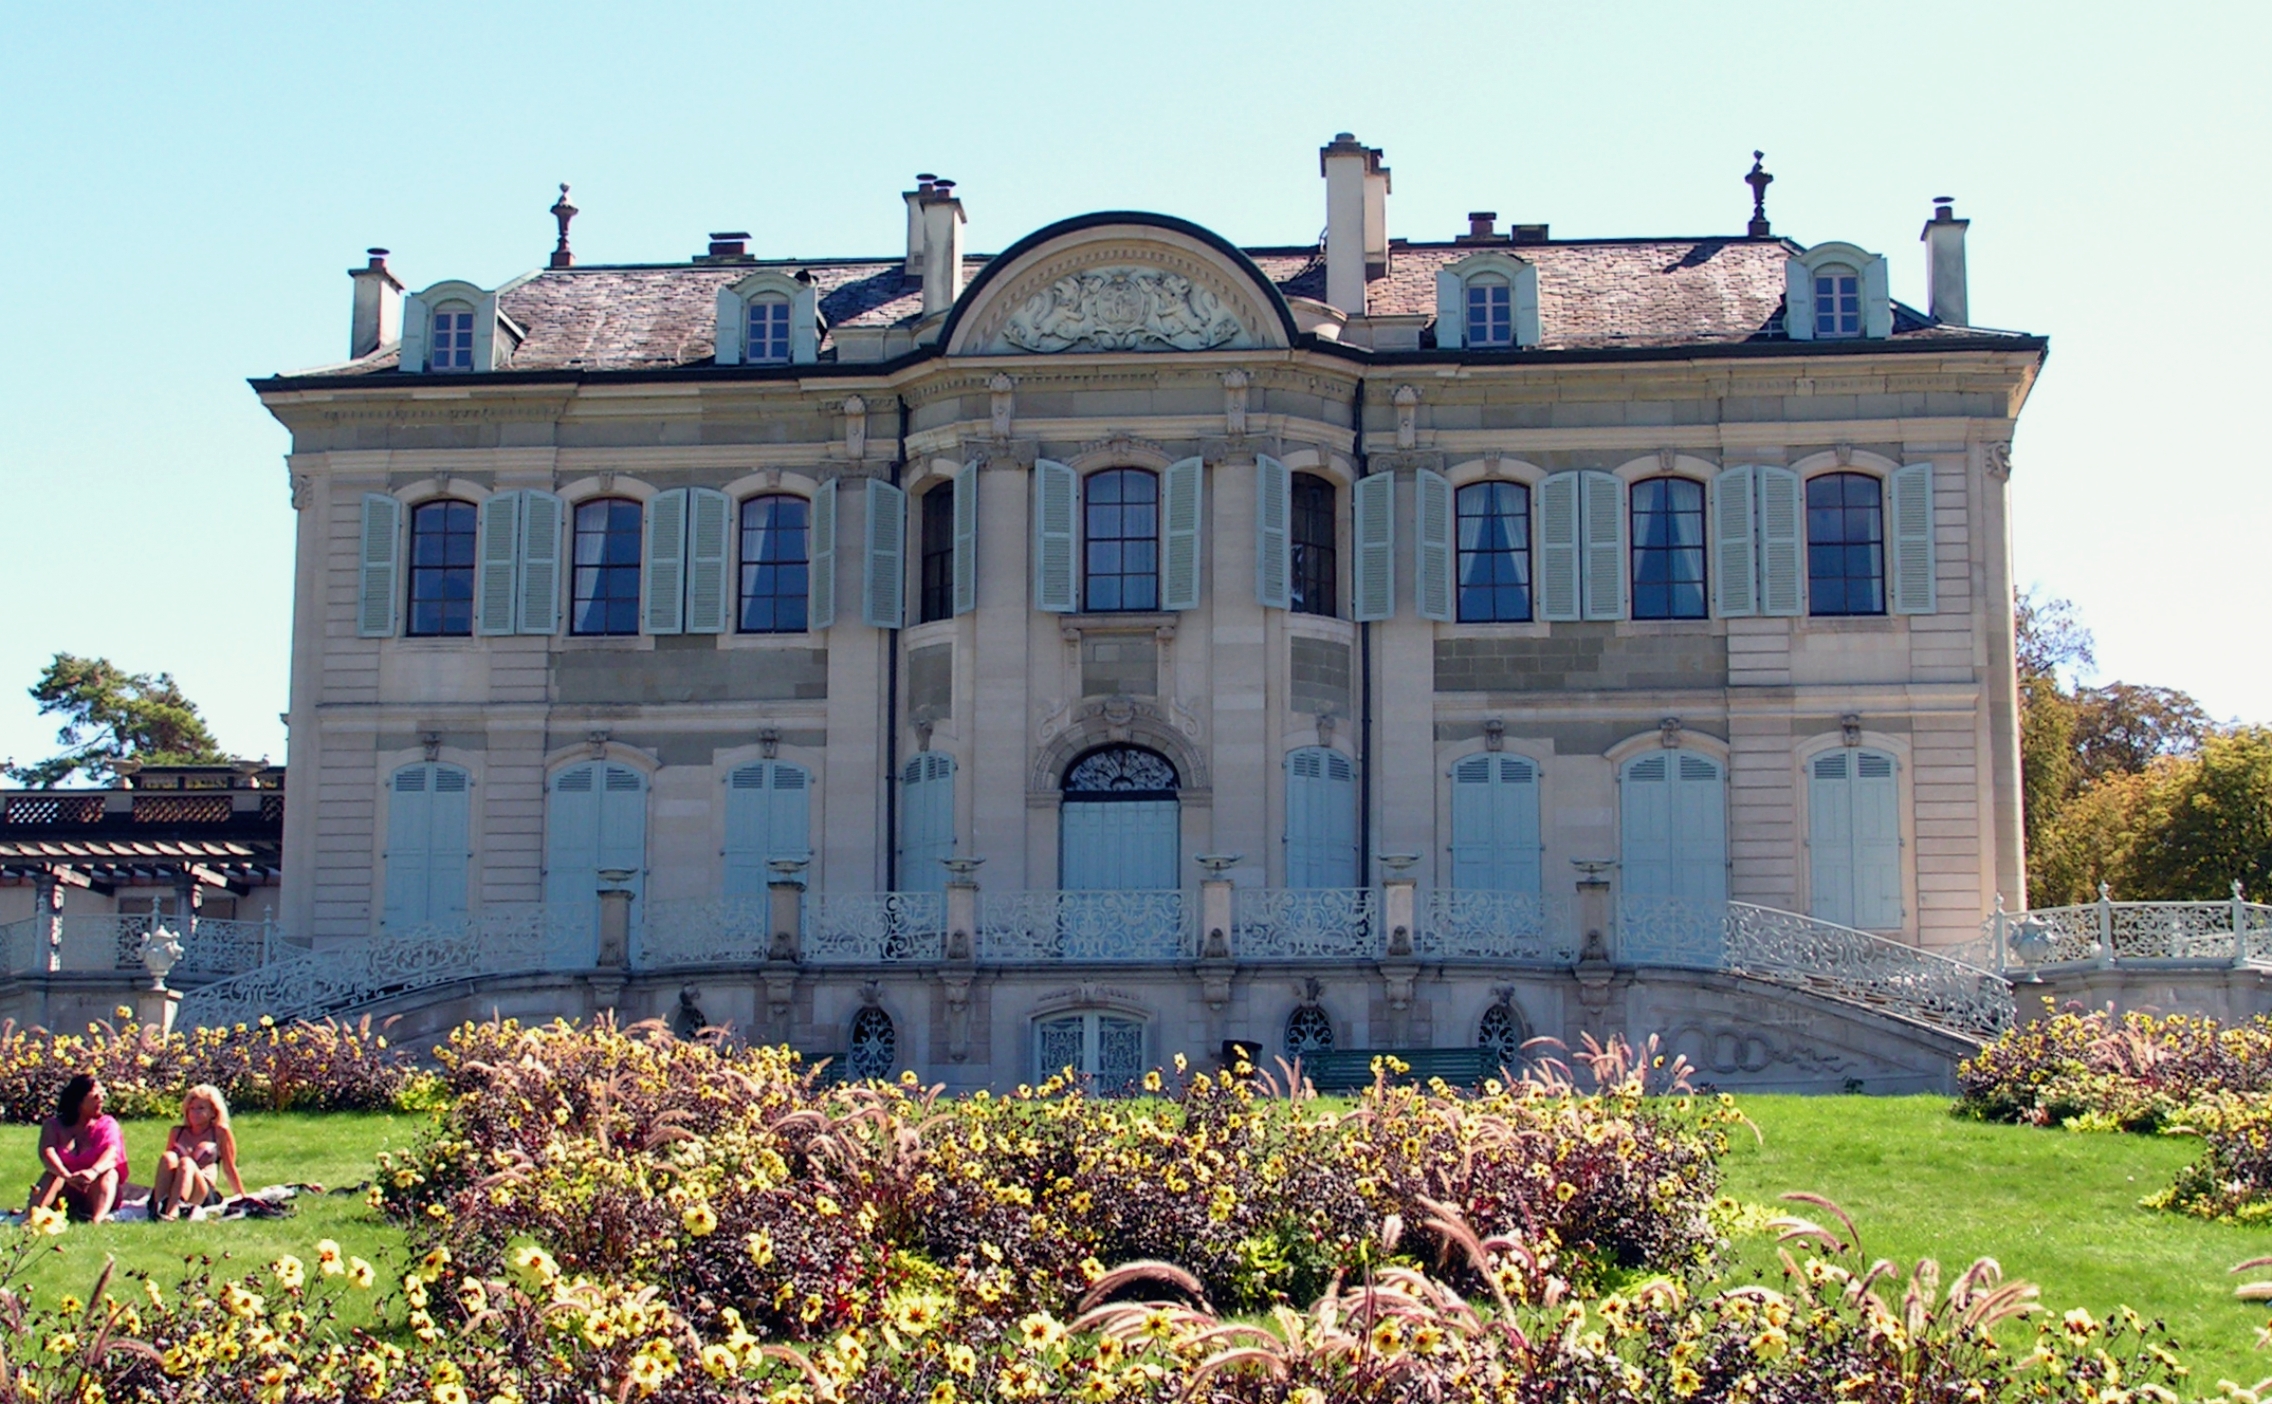 Villa la Grange nad jeziorem Genewa. To w niej odbył się szczyt Biden-Putin. Fot. Wikimedia Commons